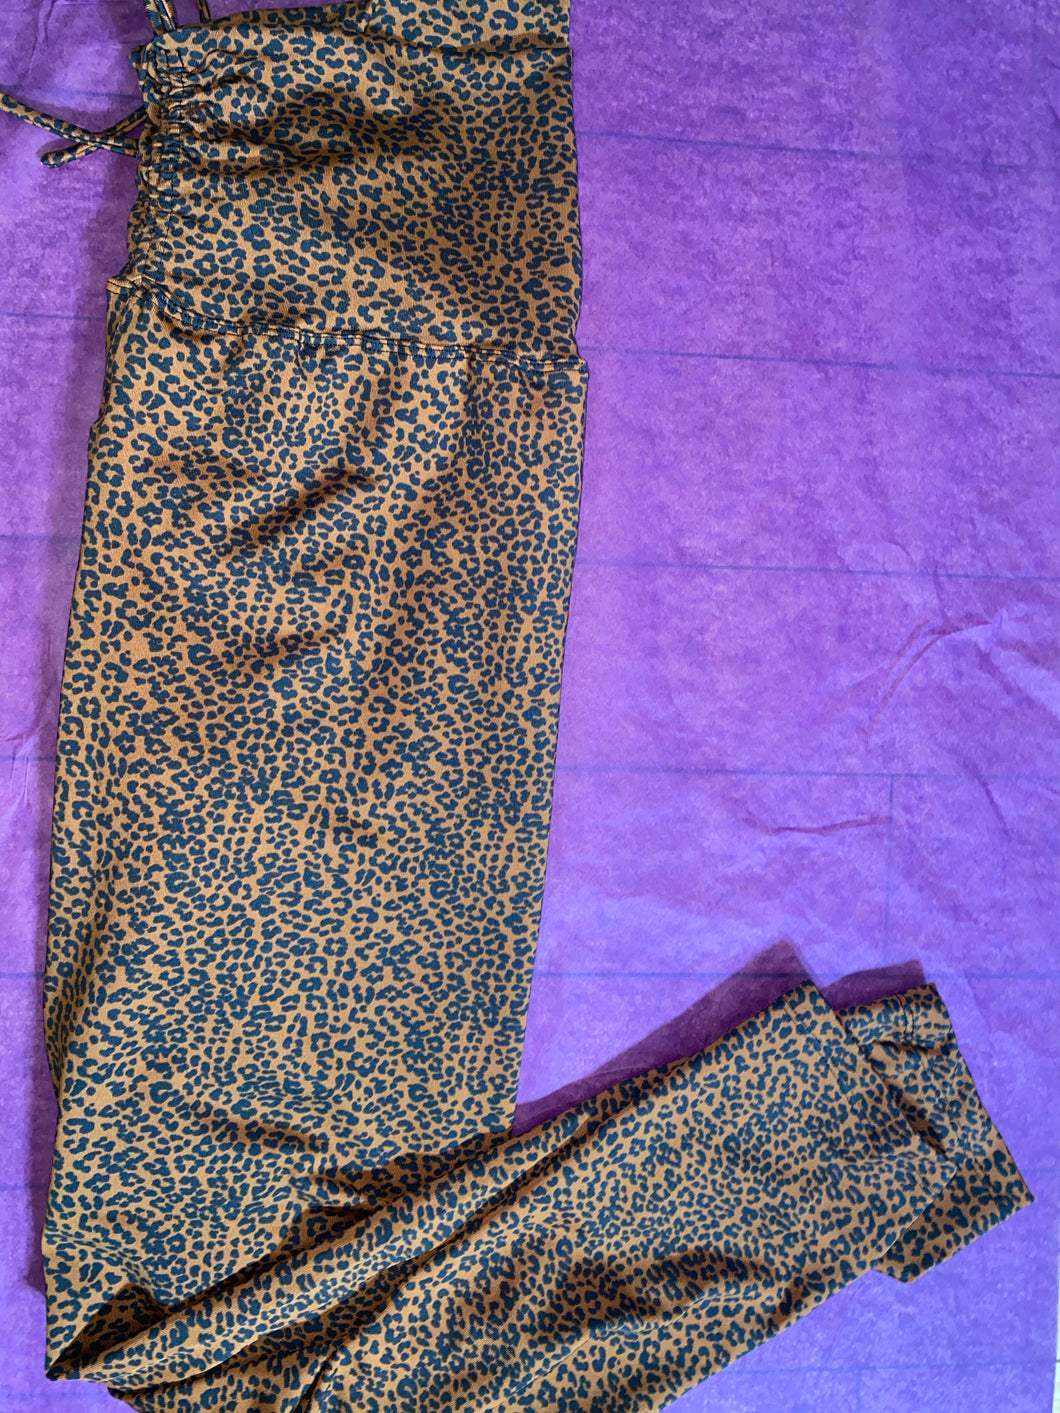 Cheetah print leggings